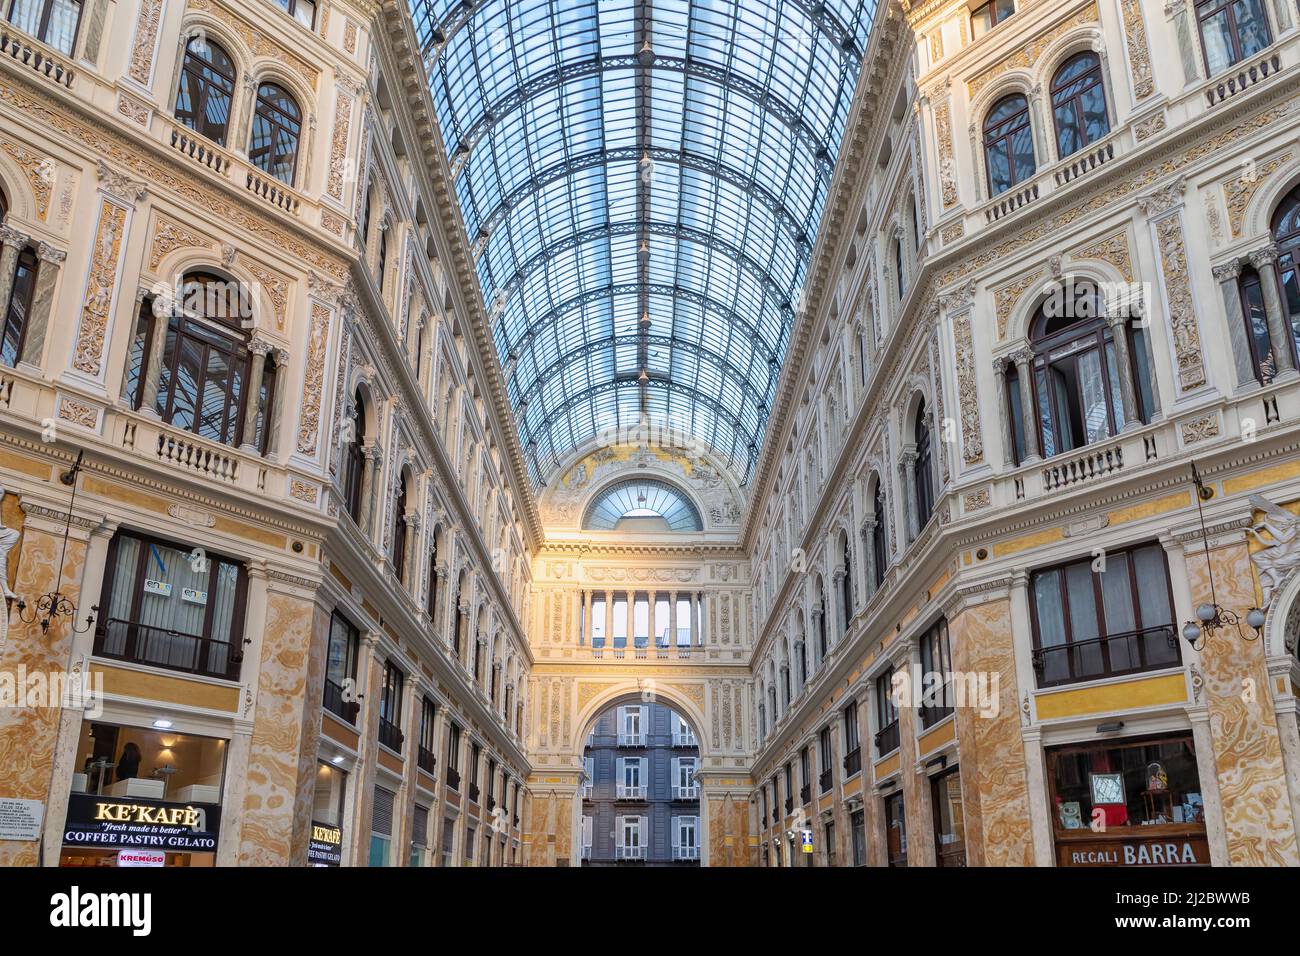 Nápoles, Italia - 24 de marzo de 2022: La galería Umberto I vista desde el interior, después de la reciente restauración. La galería comercial fue construida en Nápoles b Foto de stock